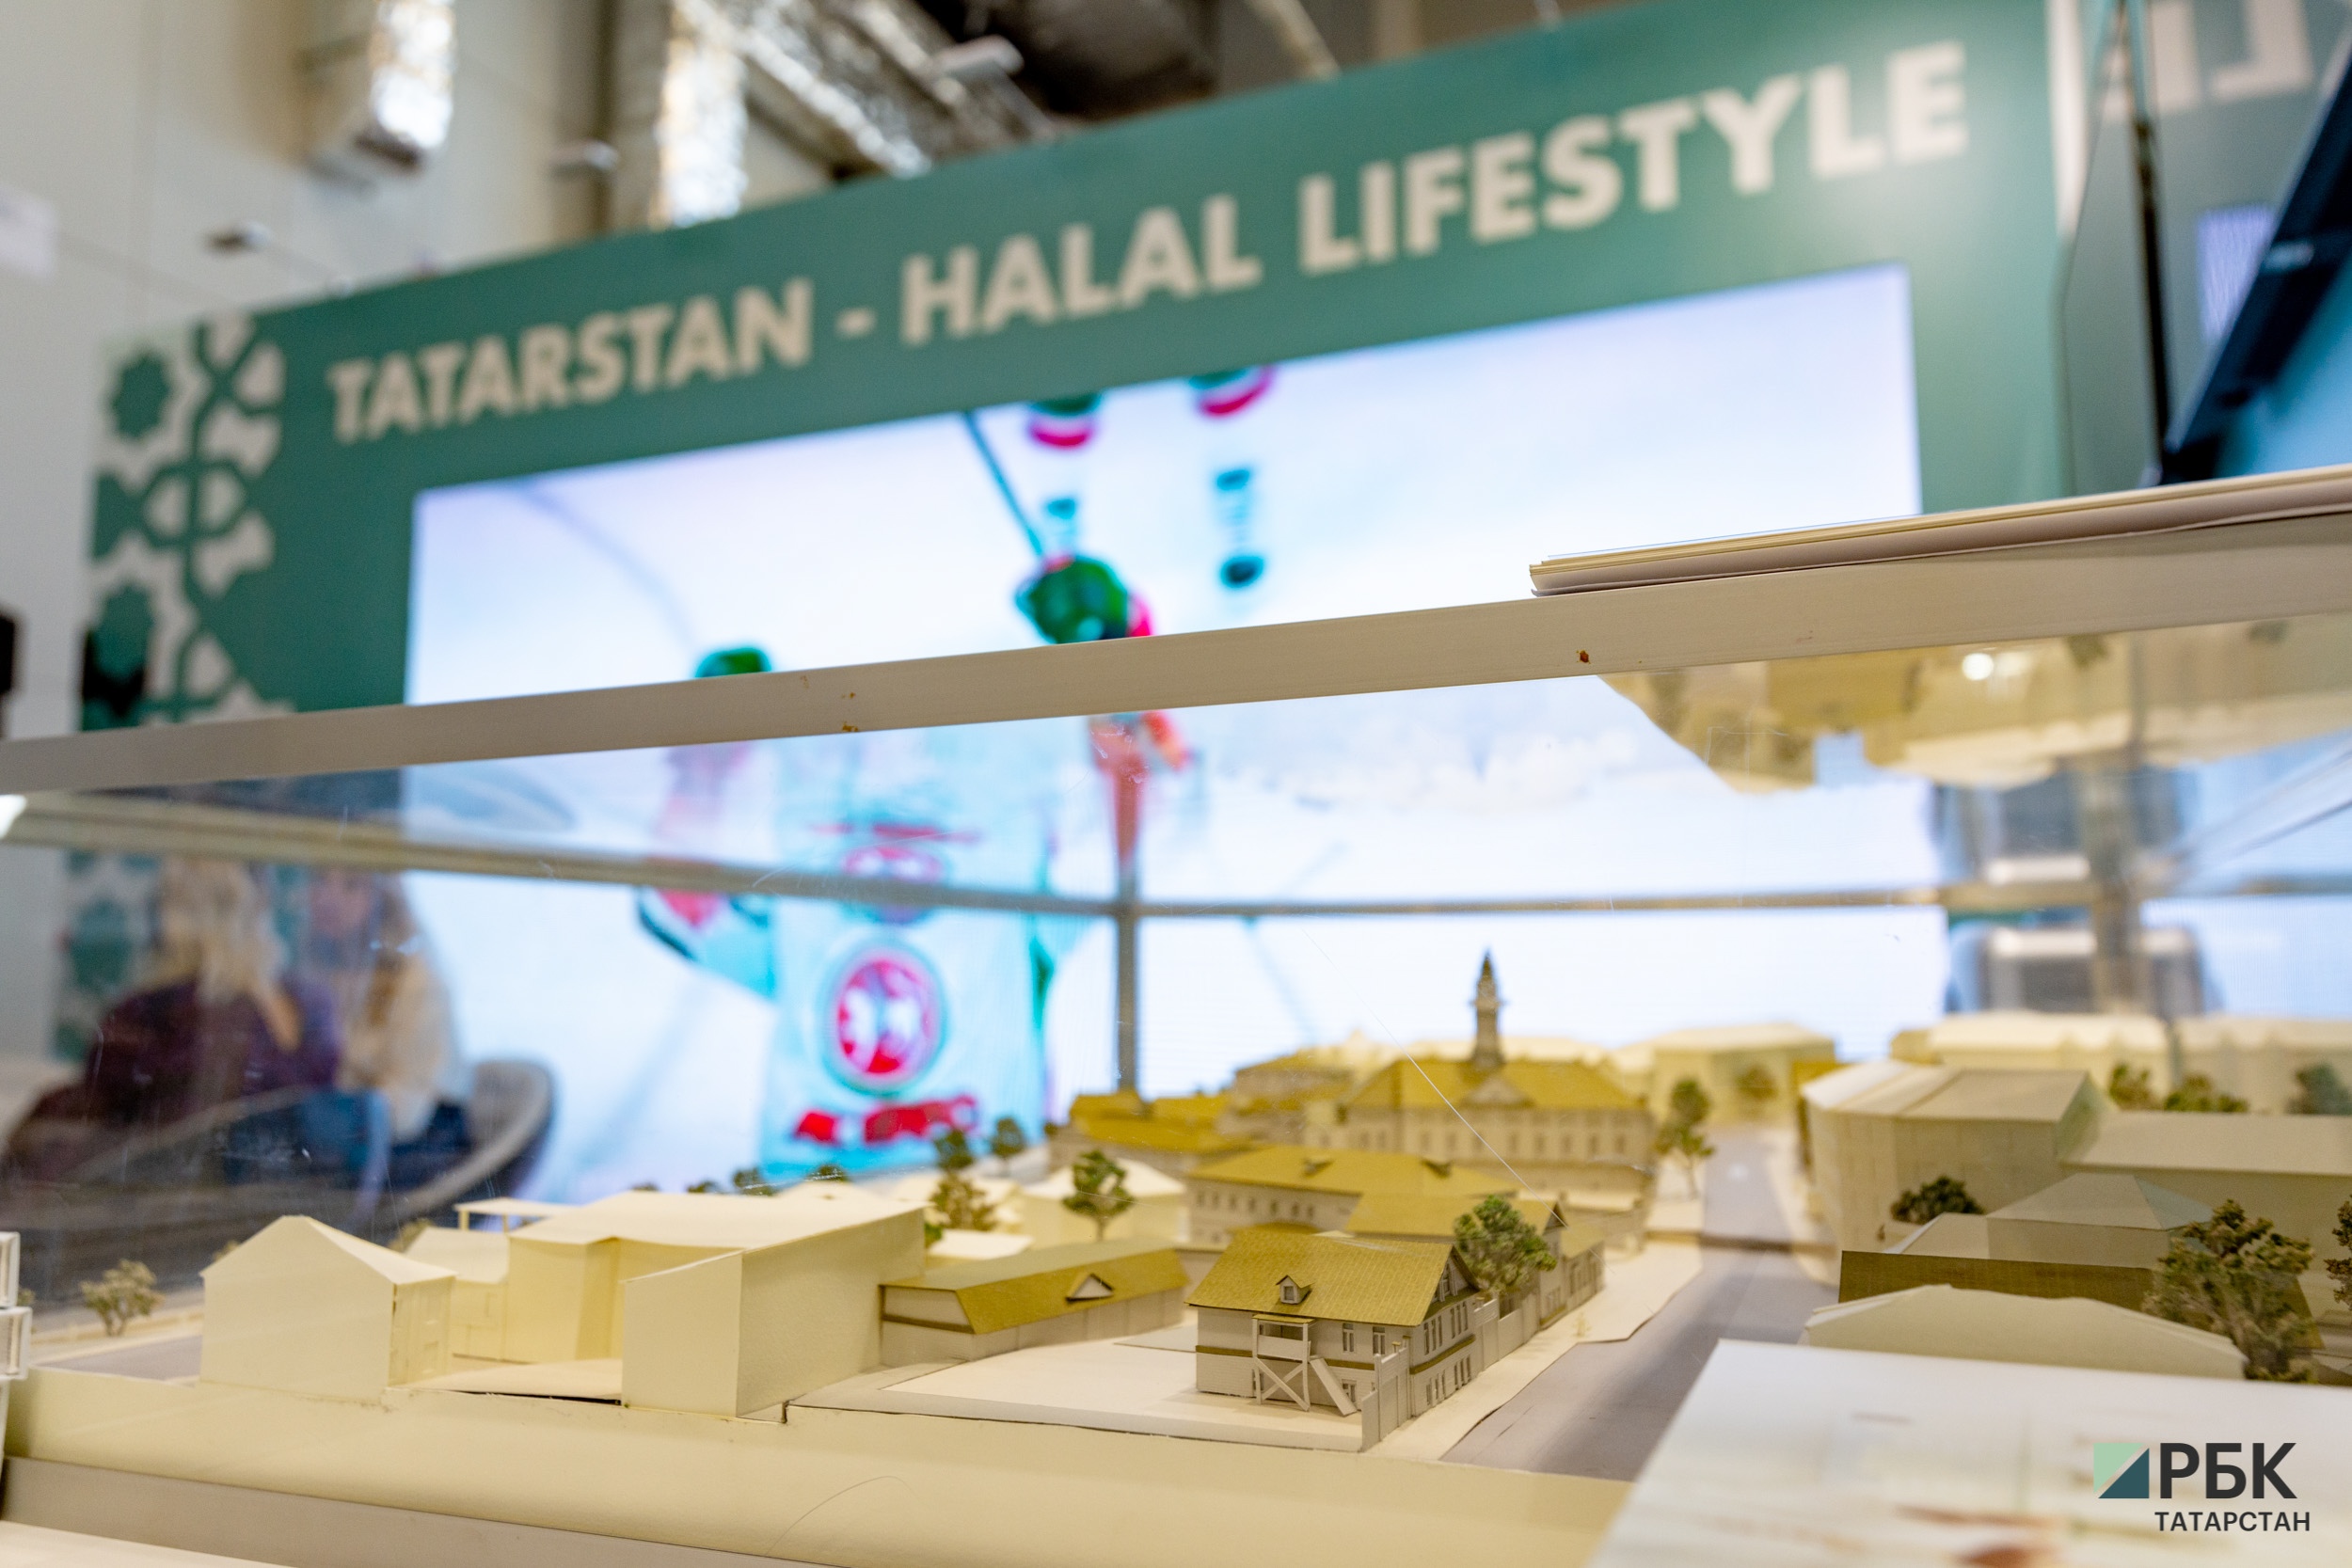 Бизнес исламских стран впервые представит недвижимость на выставке в РТ